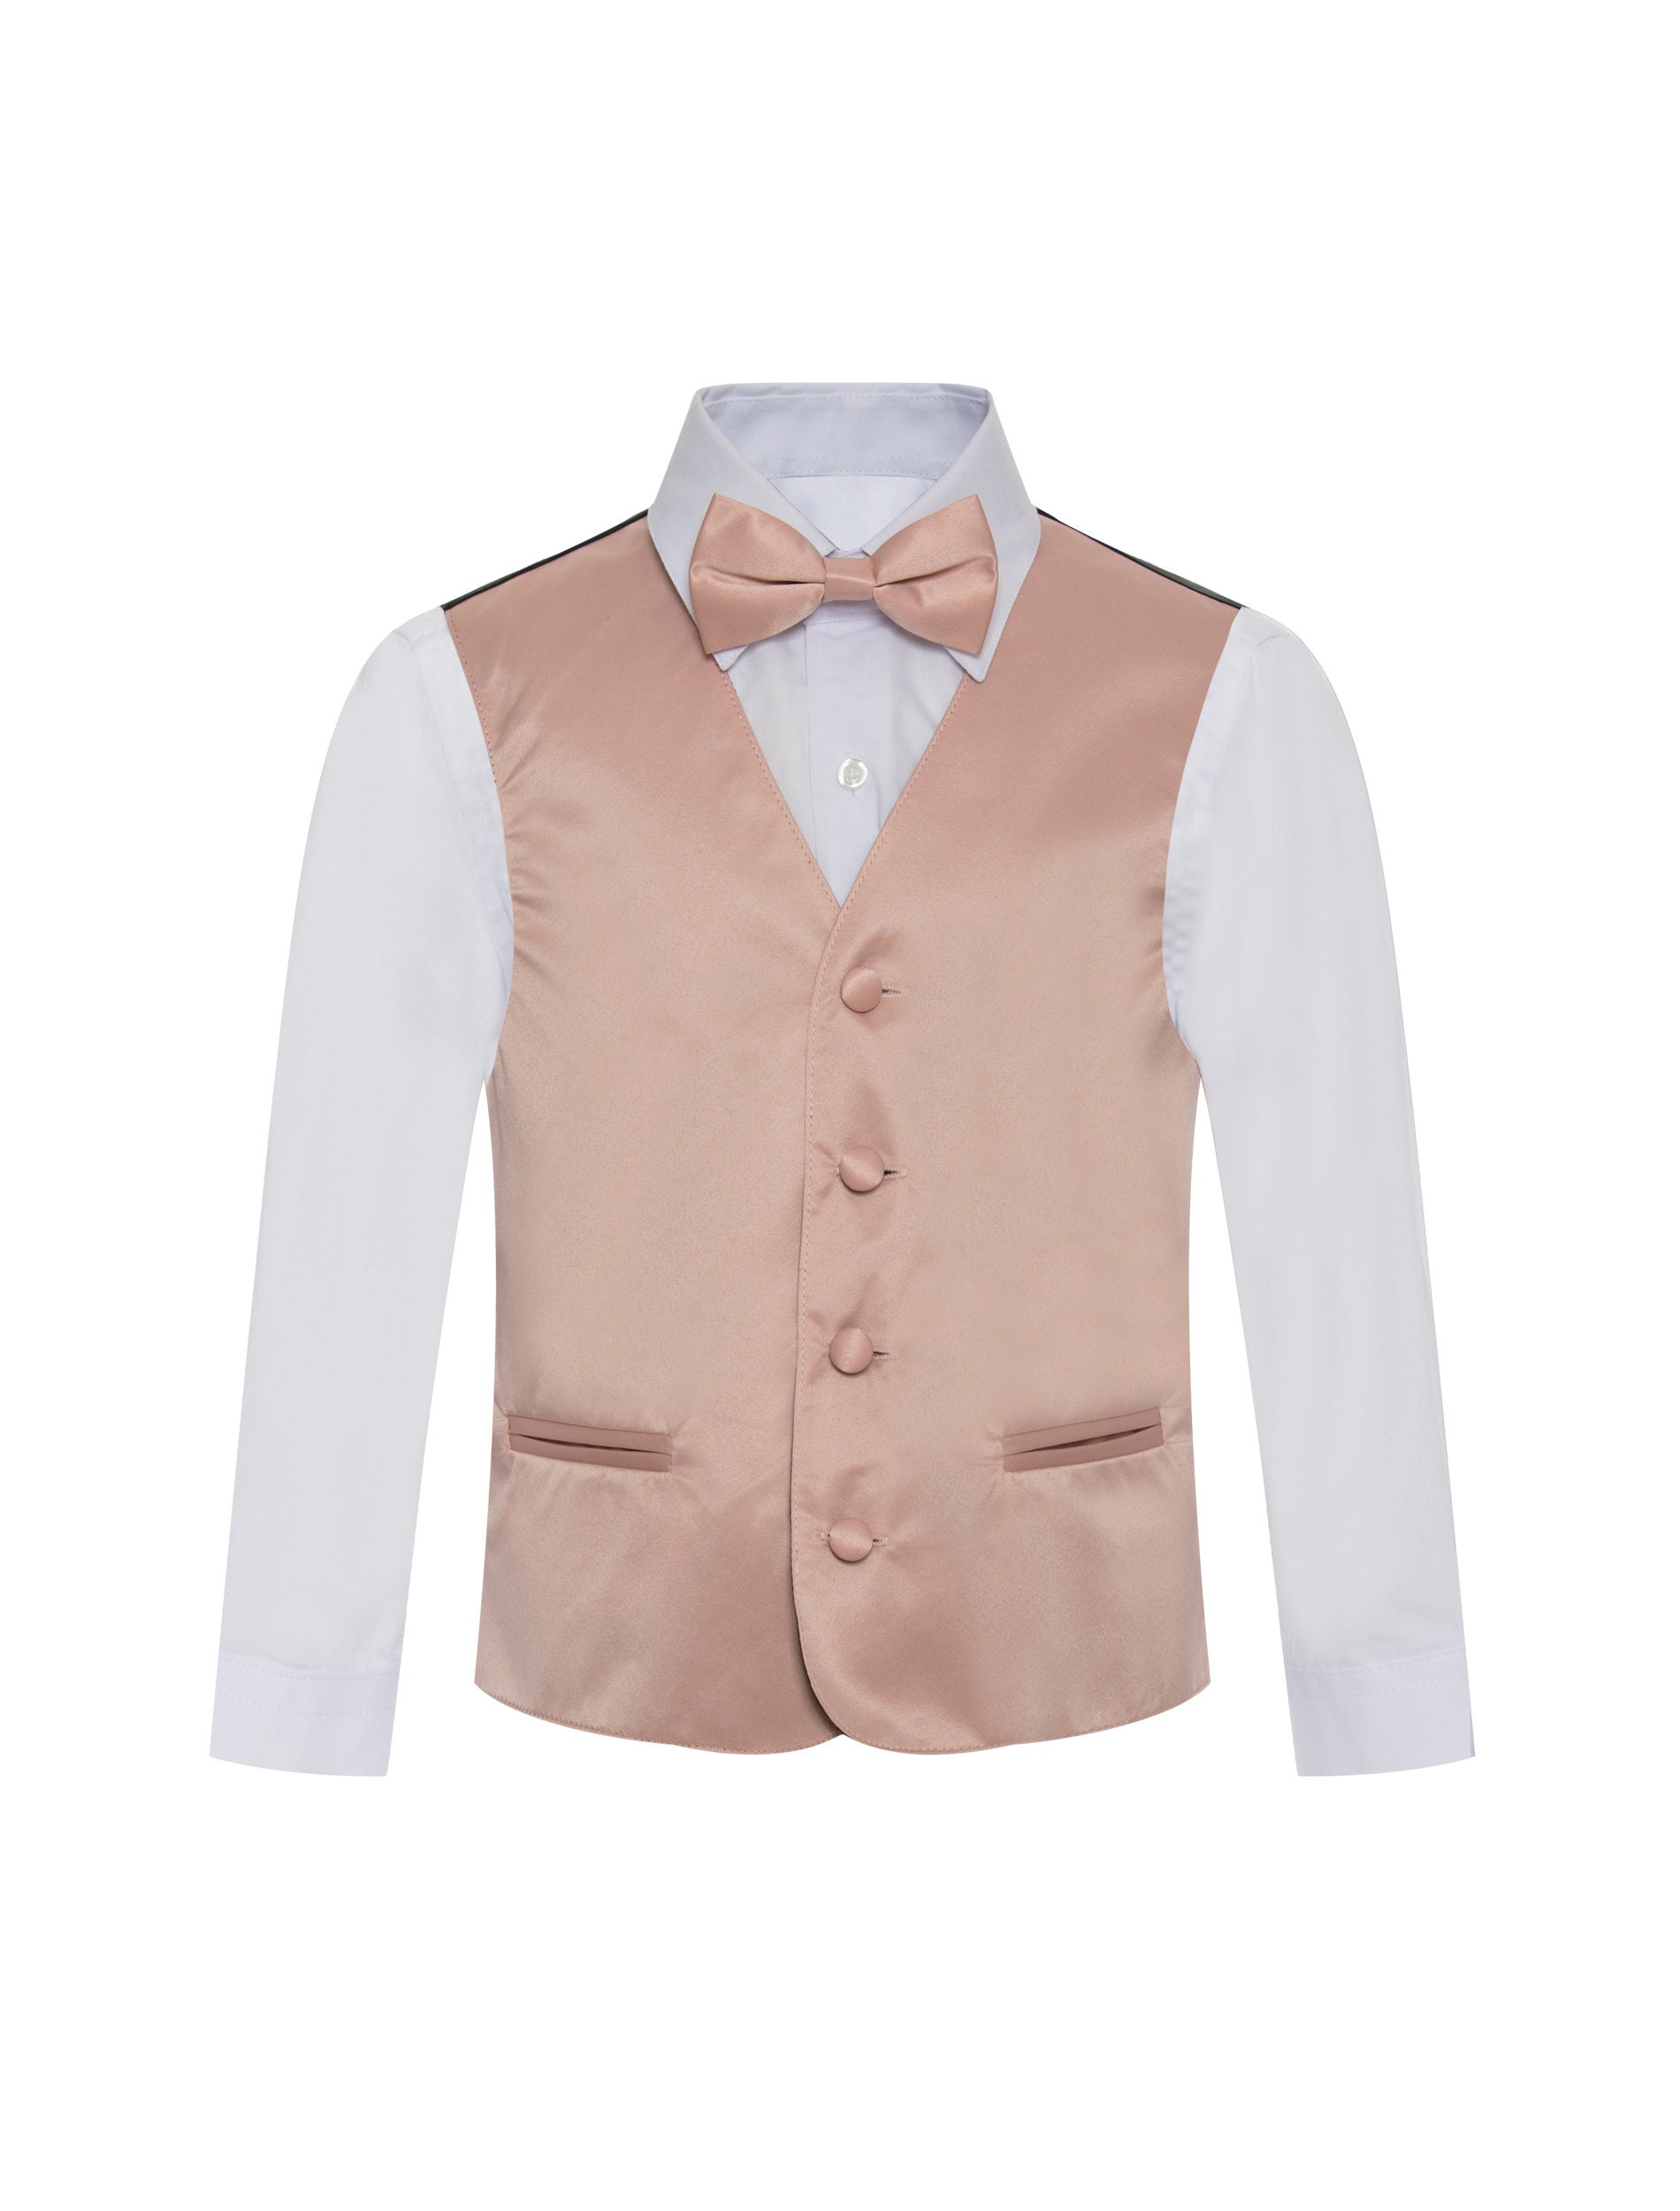 New Baby Boy & Toddler Eton Formal Vest Suit Outfits Black S M L XL 2T 3T 4T 